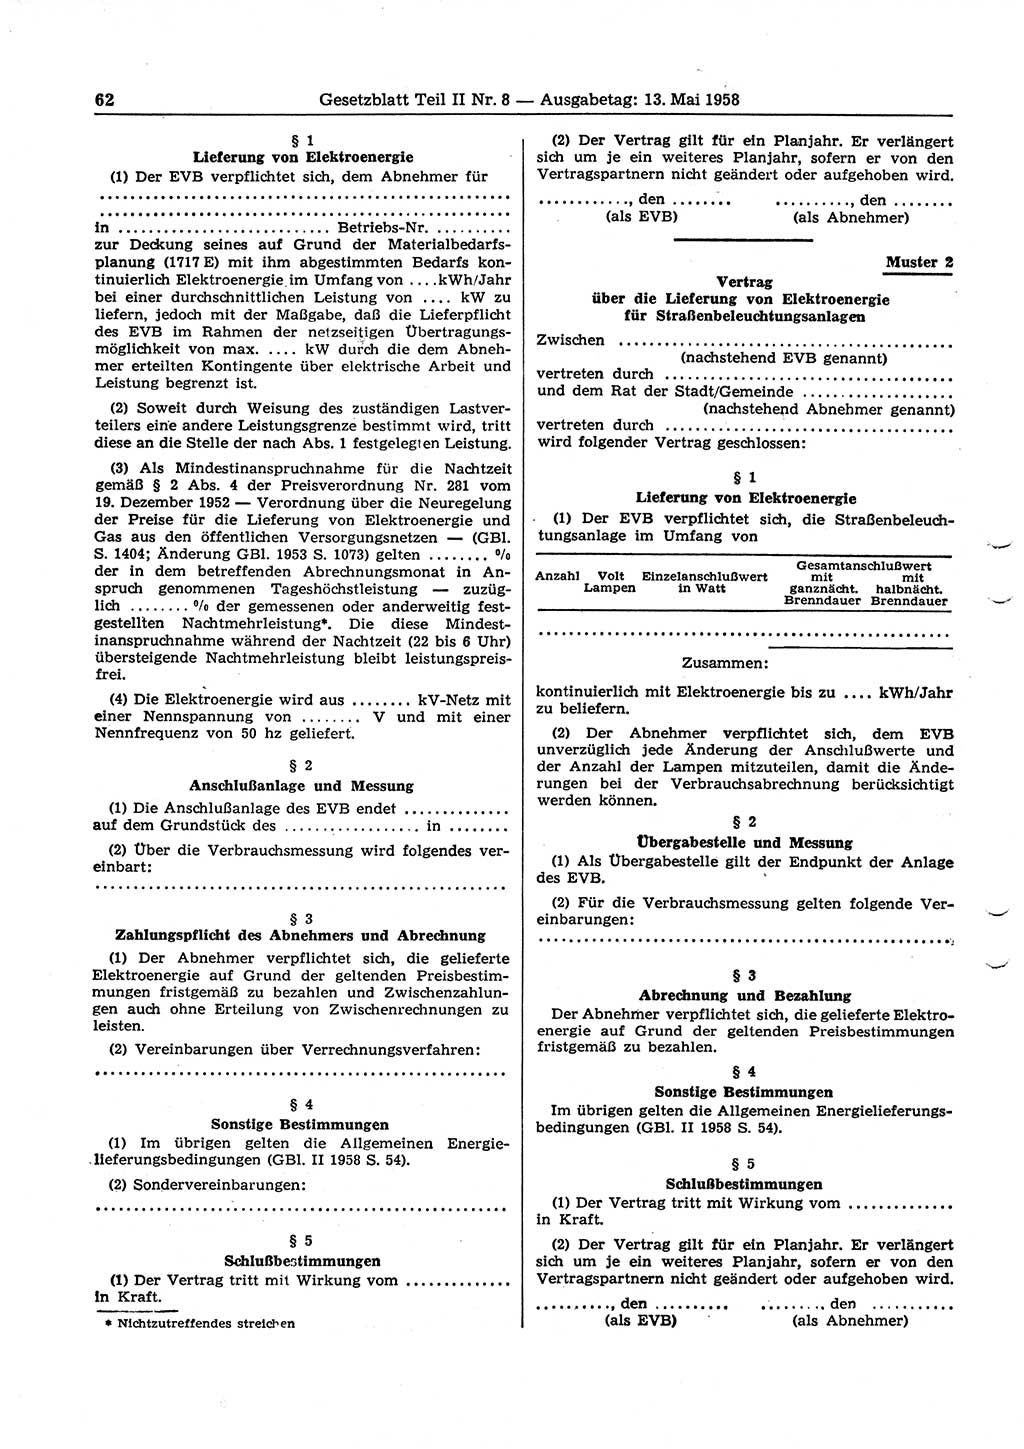 Gesetzblatt (GBl.) der Deutschen Demokratischen Republik (DDR) Teil ⅠⅠ 1958, Seite 62 (GBl. DDR ⅠⅠ 1958, S. 62)